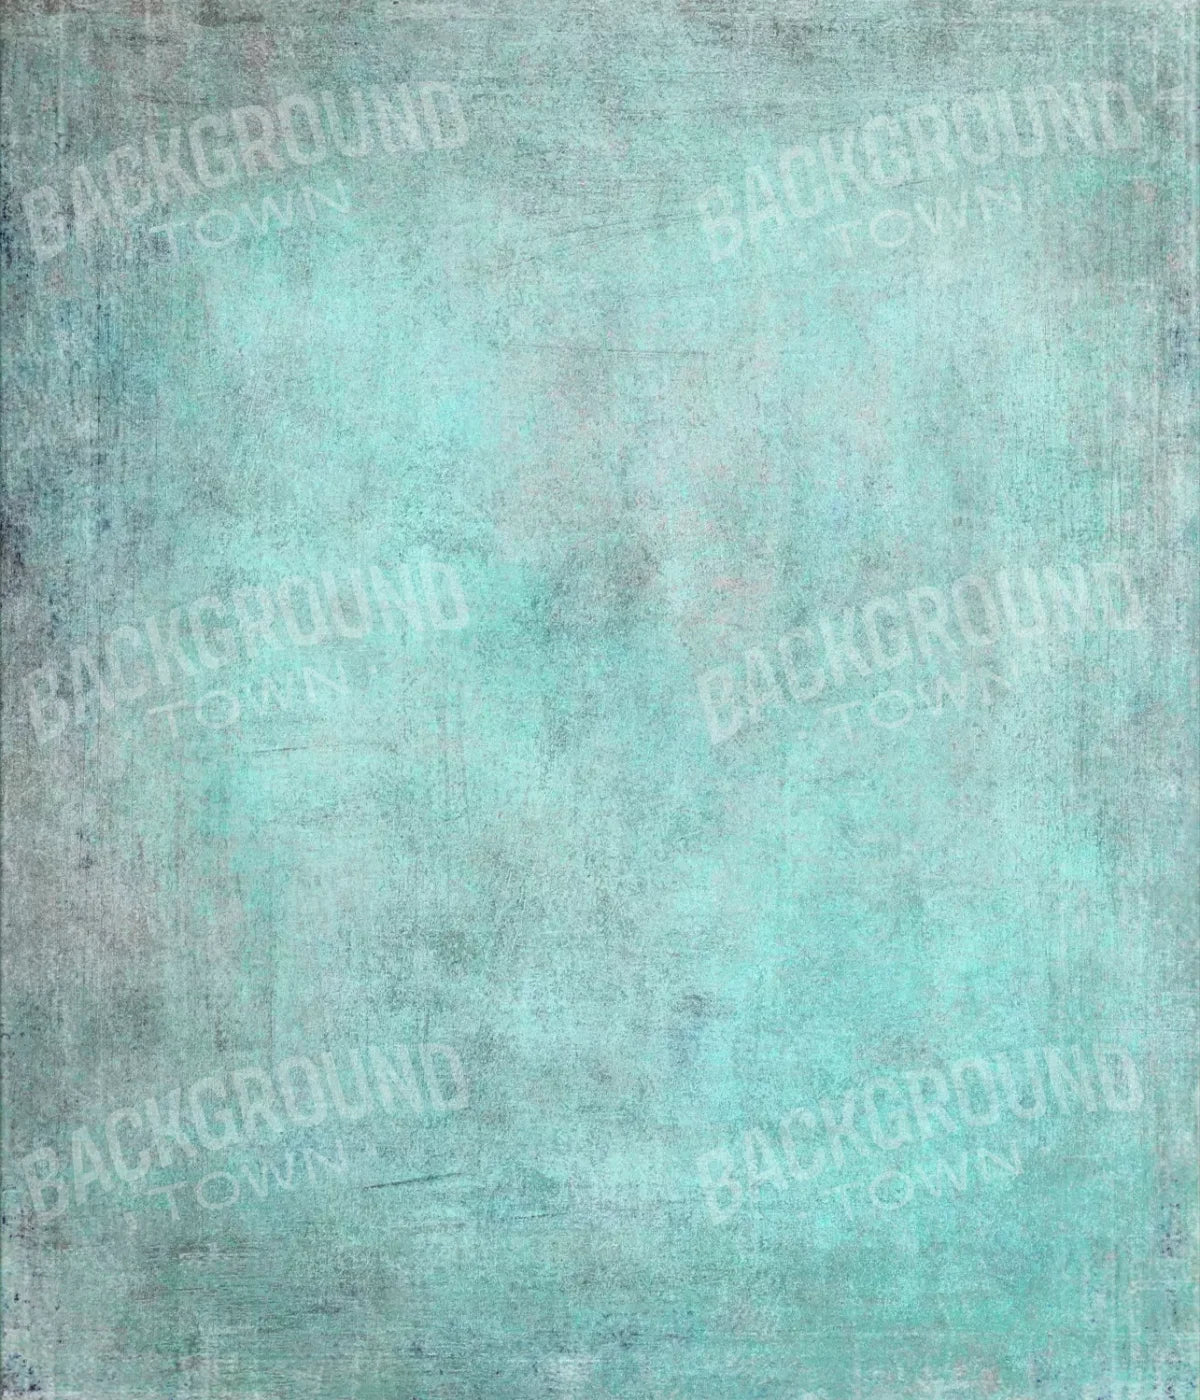 Grunge Seafoam 10X12 Ultracloth ( 120 X 144 Inch ) Backdrop